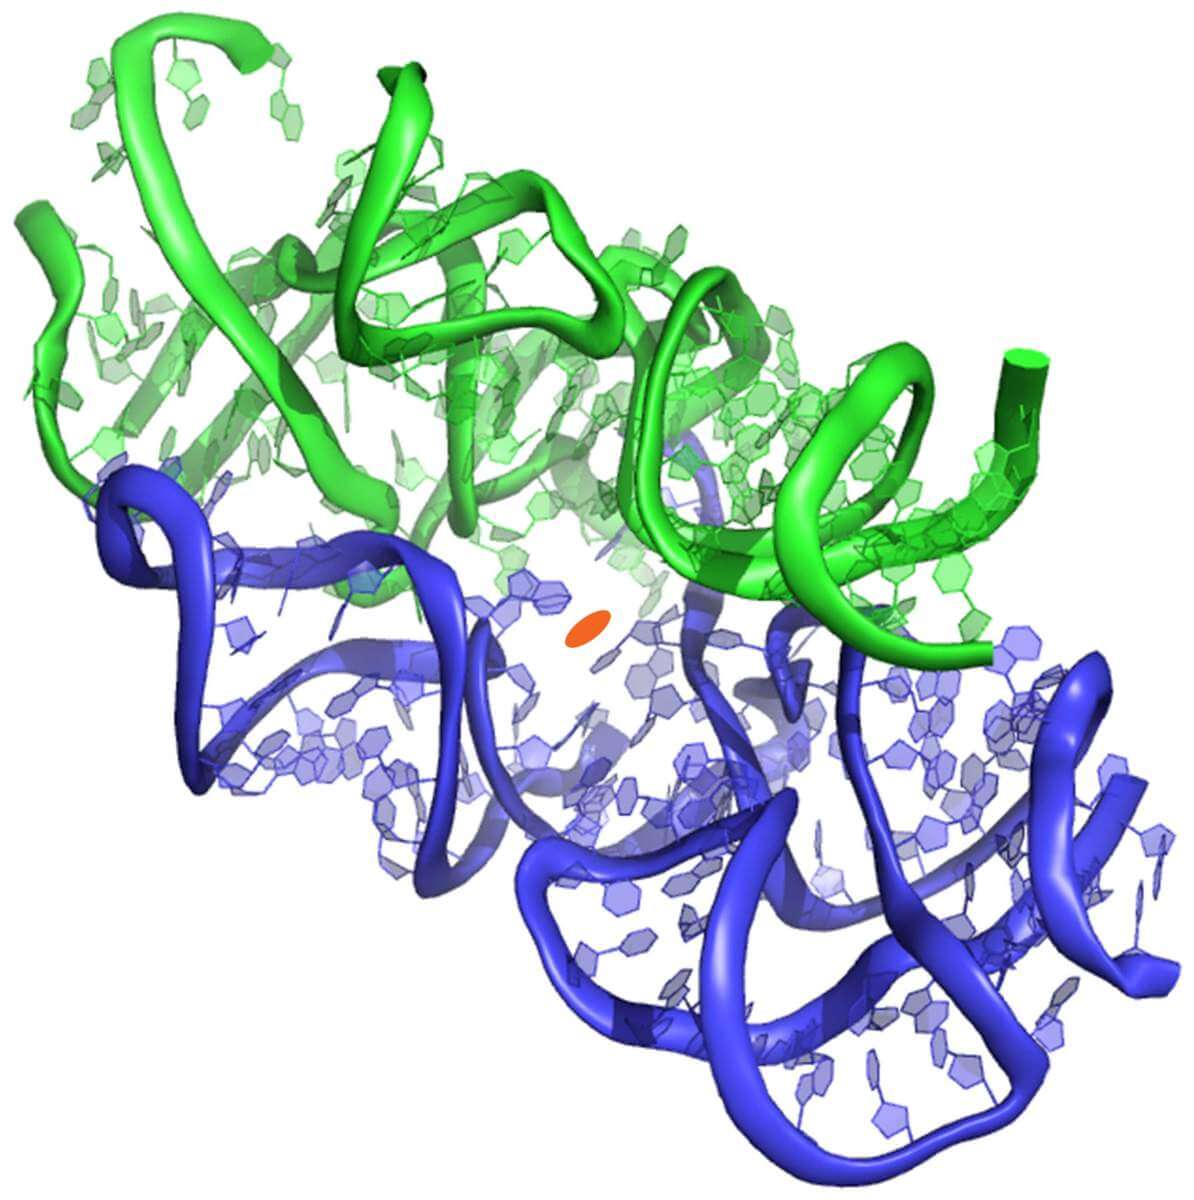 מבנה הפרוטו-ריבוזום, באדיבות מכון ויצמן